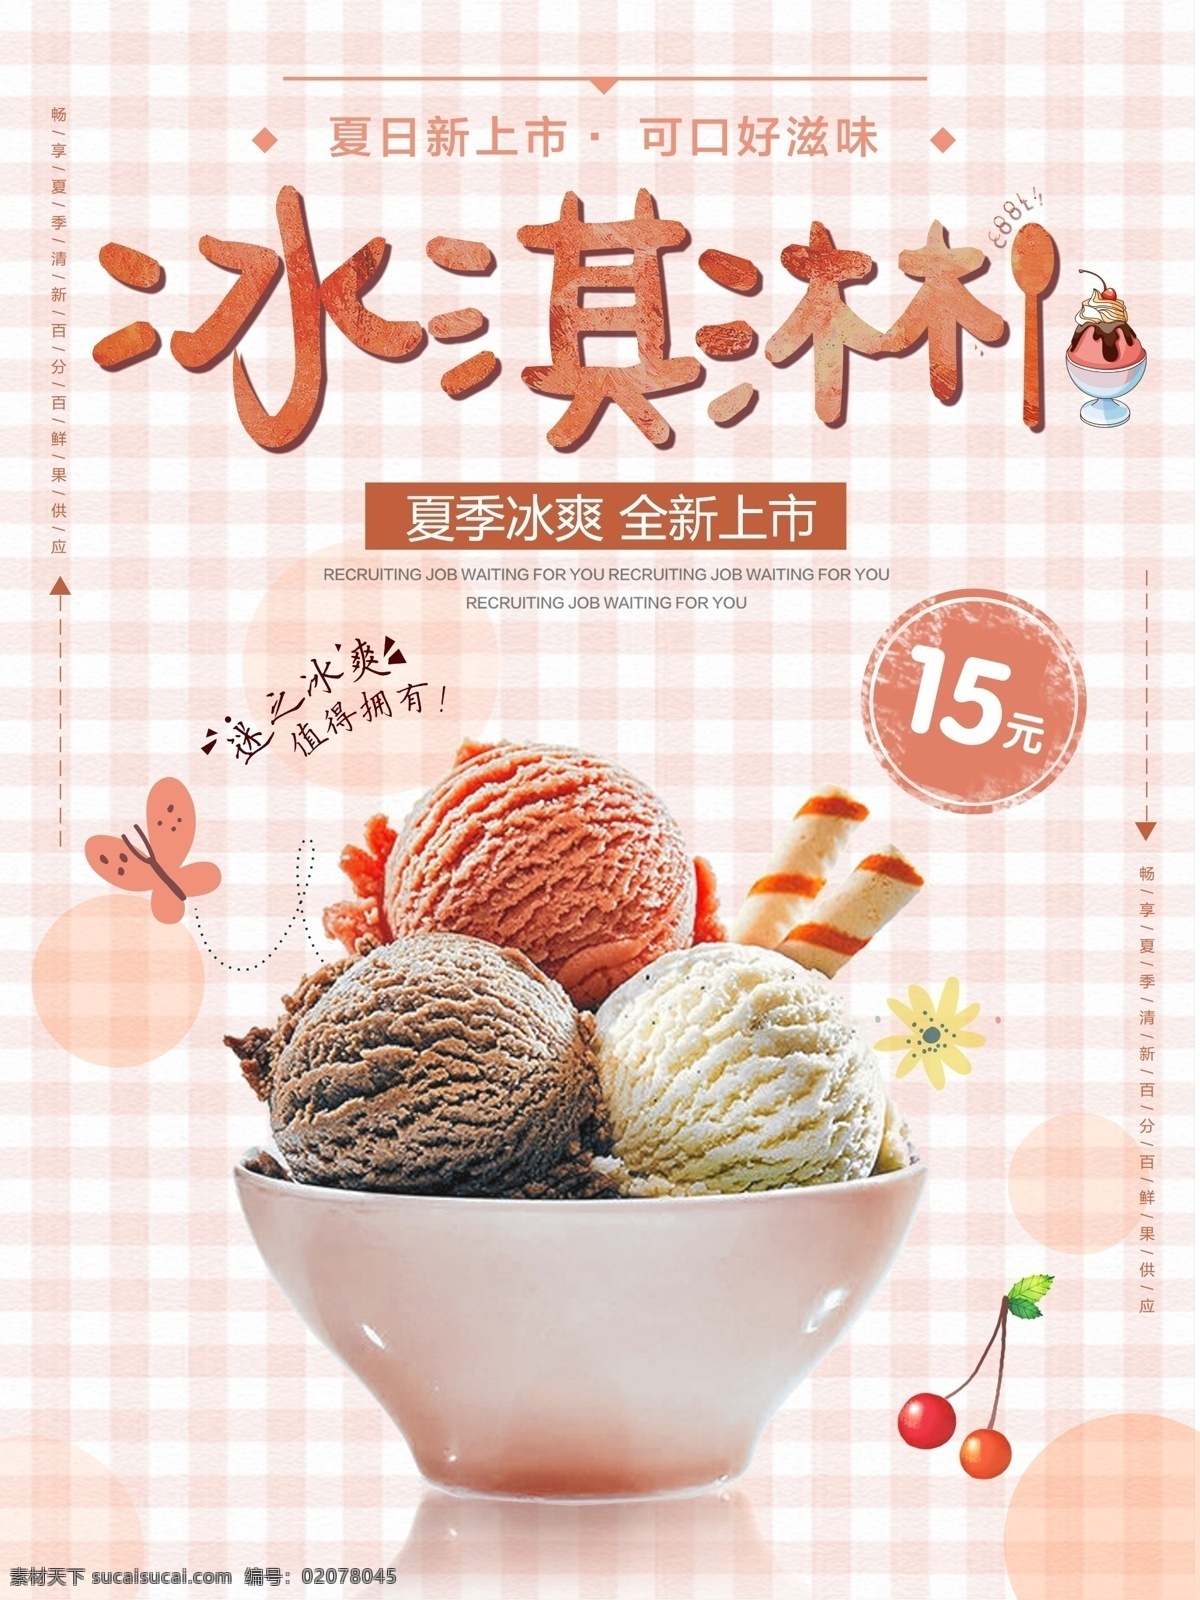 清新 夏季 夏日 甜品 冰淇淋 美食 促销 海报 夏天 雪糕 冰淇淋火锅